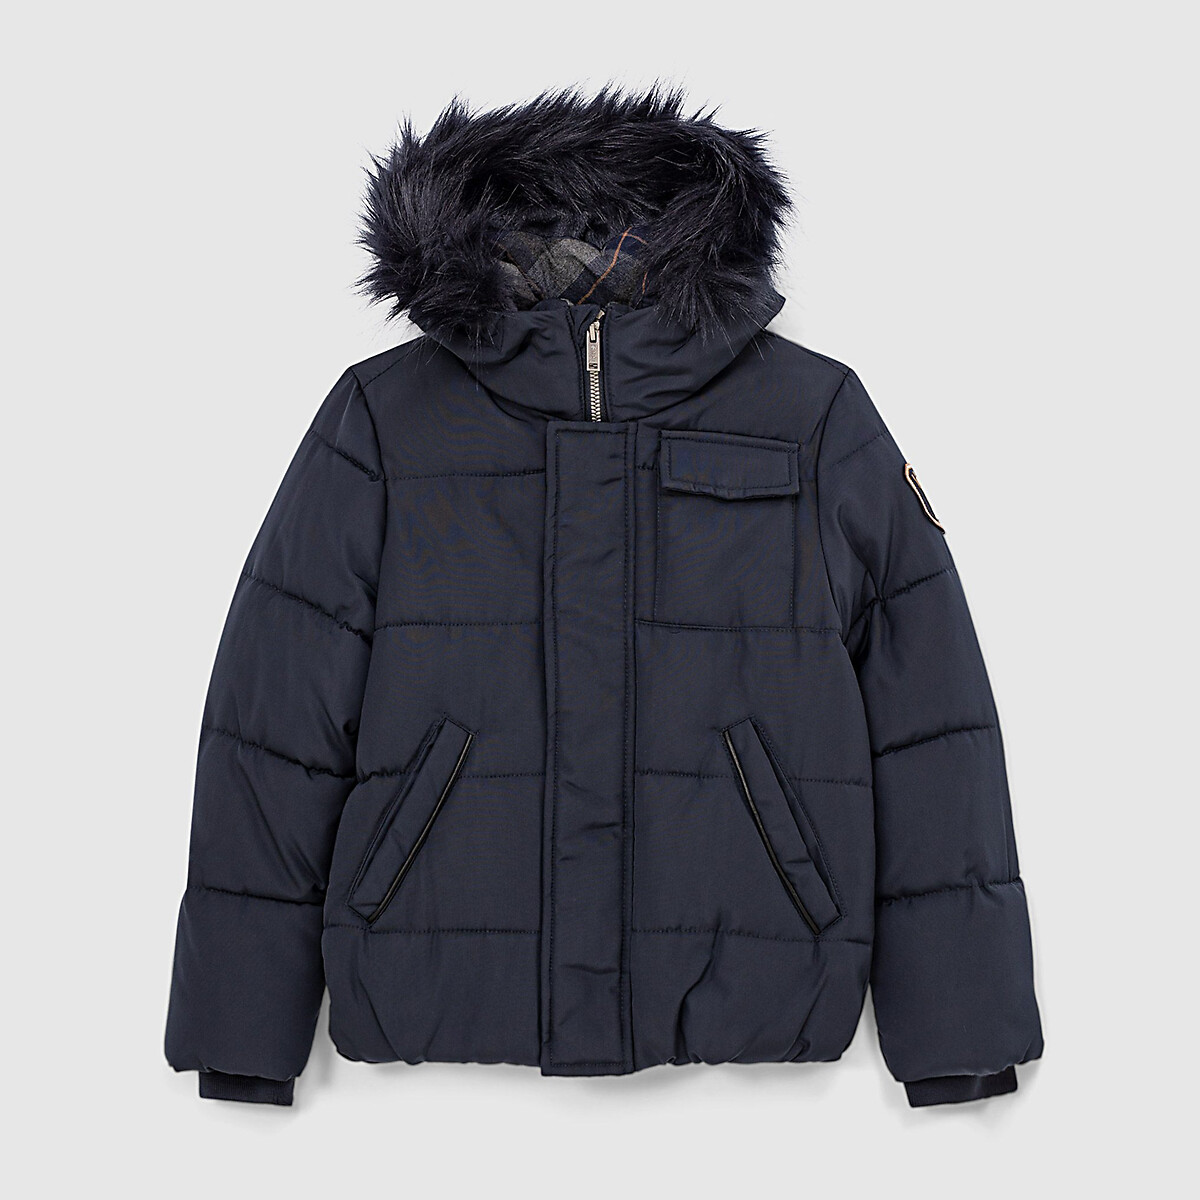 Куртка IKKS JUNIOR Стеганая утепленная с капюшоном 4-14 лет 6 лет - 114 см синий, размер 6 лет - 114 см